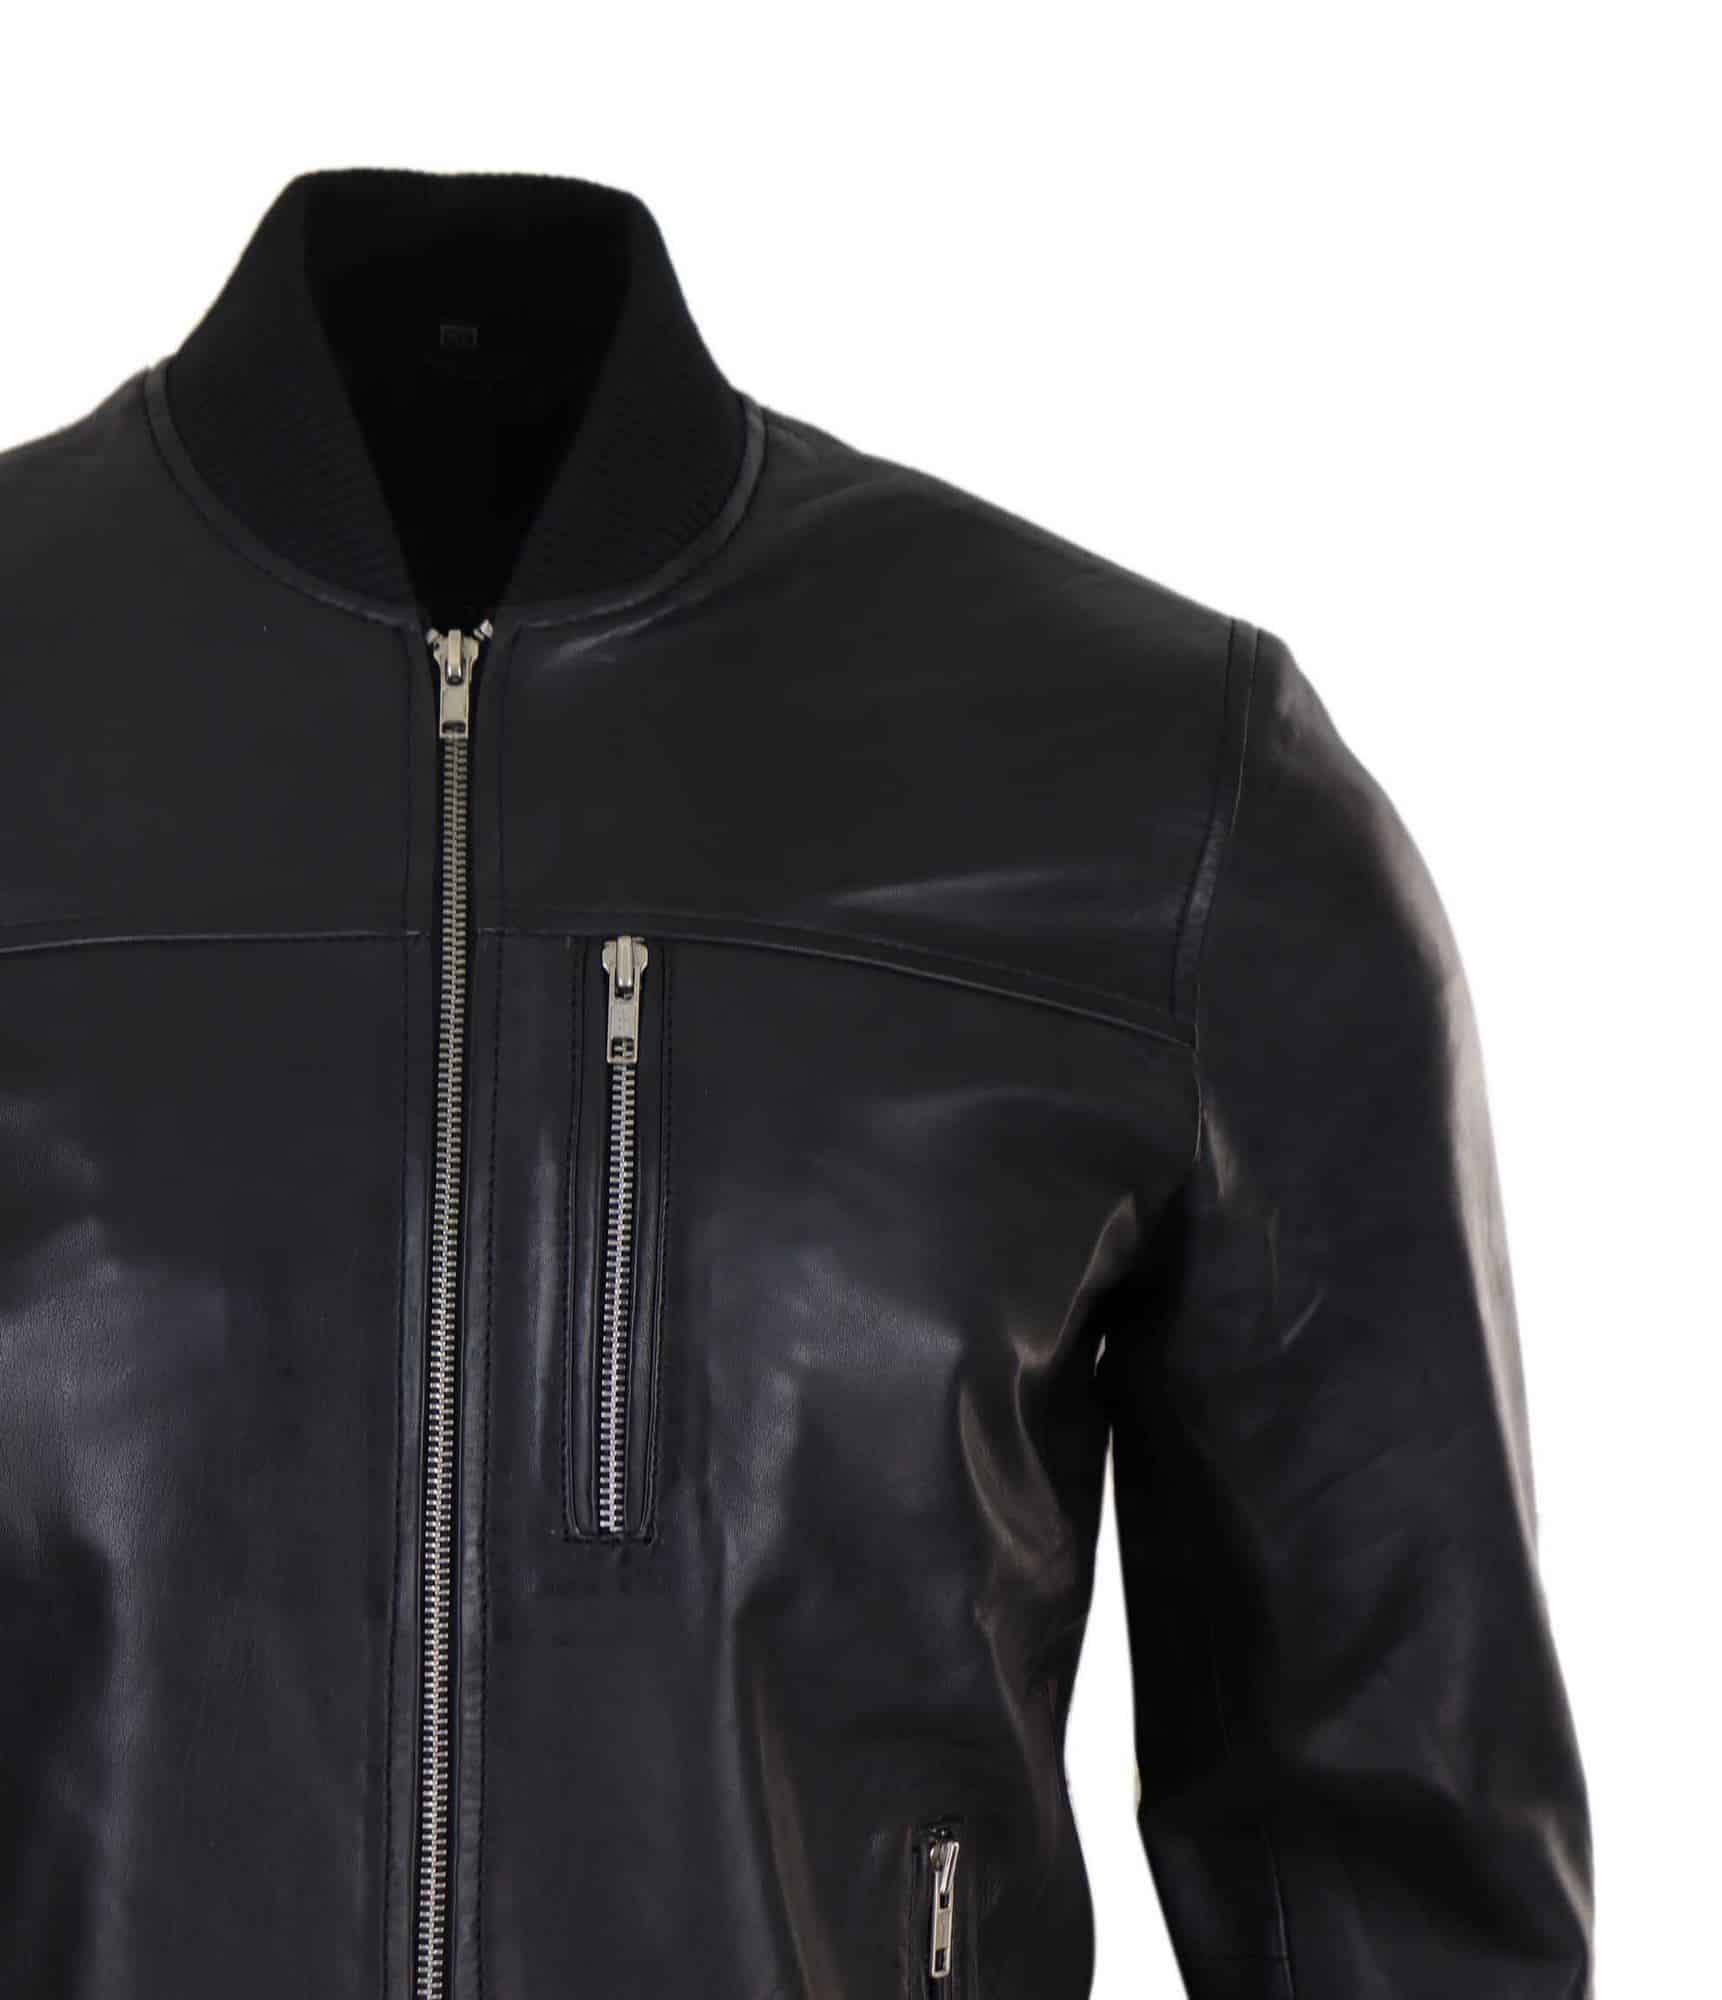 Mens Black Leather Bomber Jacket: Buy Online - Happy Gentleman